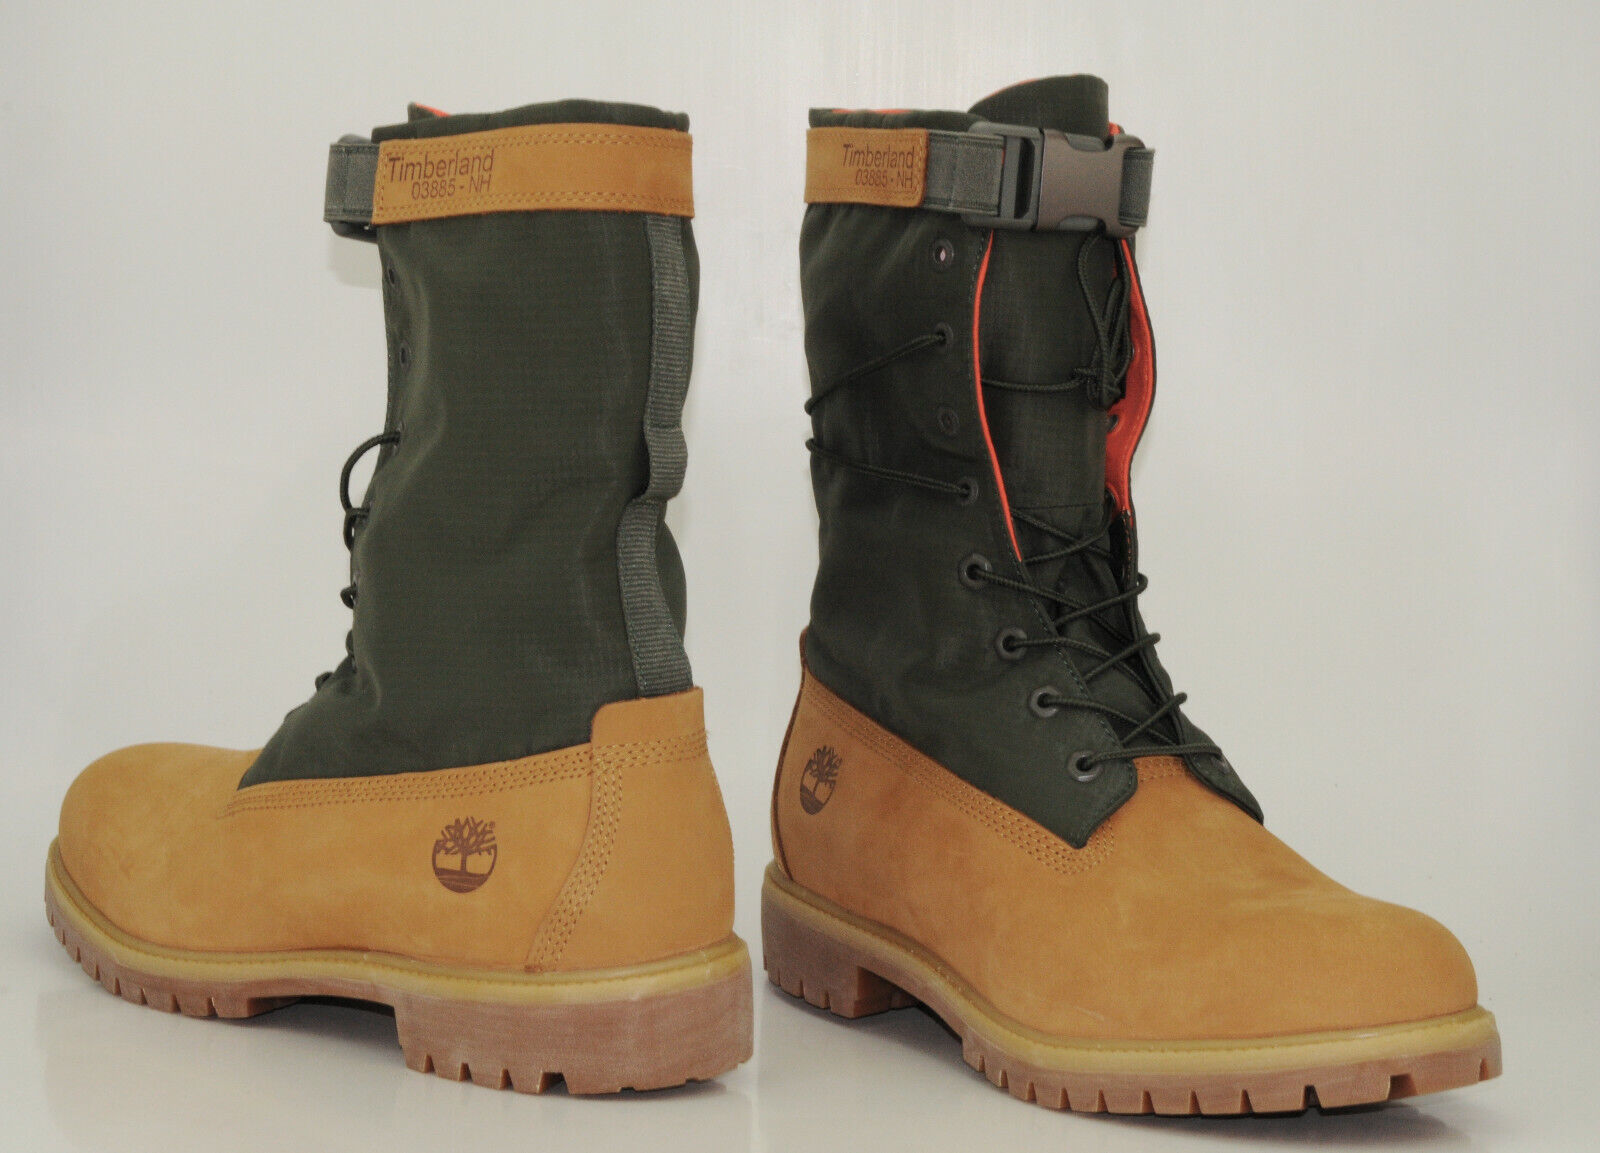 Timberland 6 Inch Premium Gaiter Waterproof Boots Herren Stiefel Schuhe A1QY8